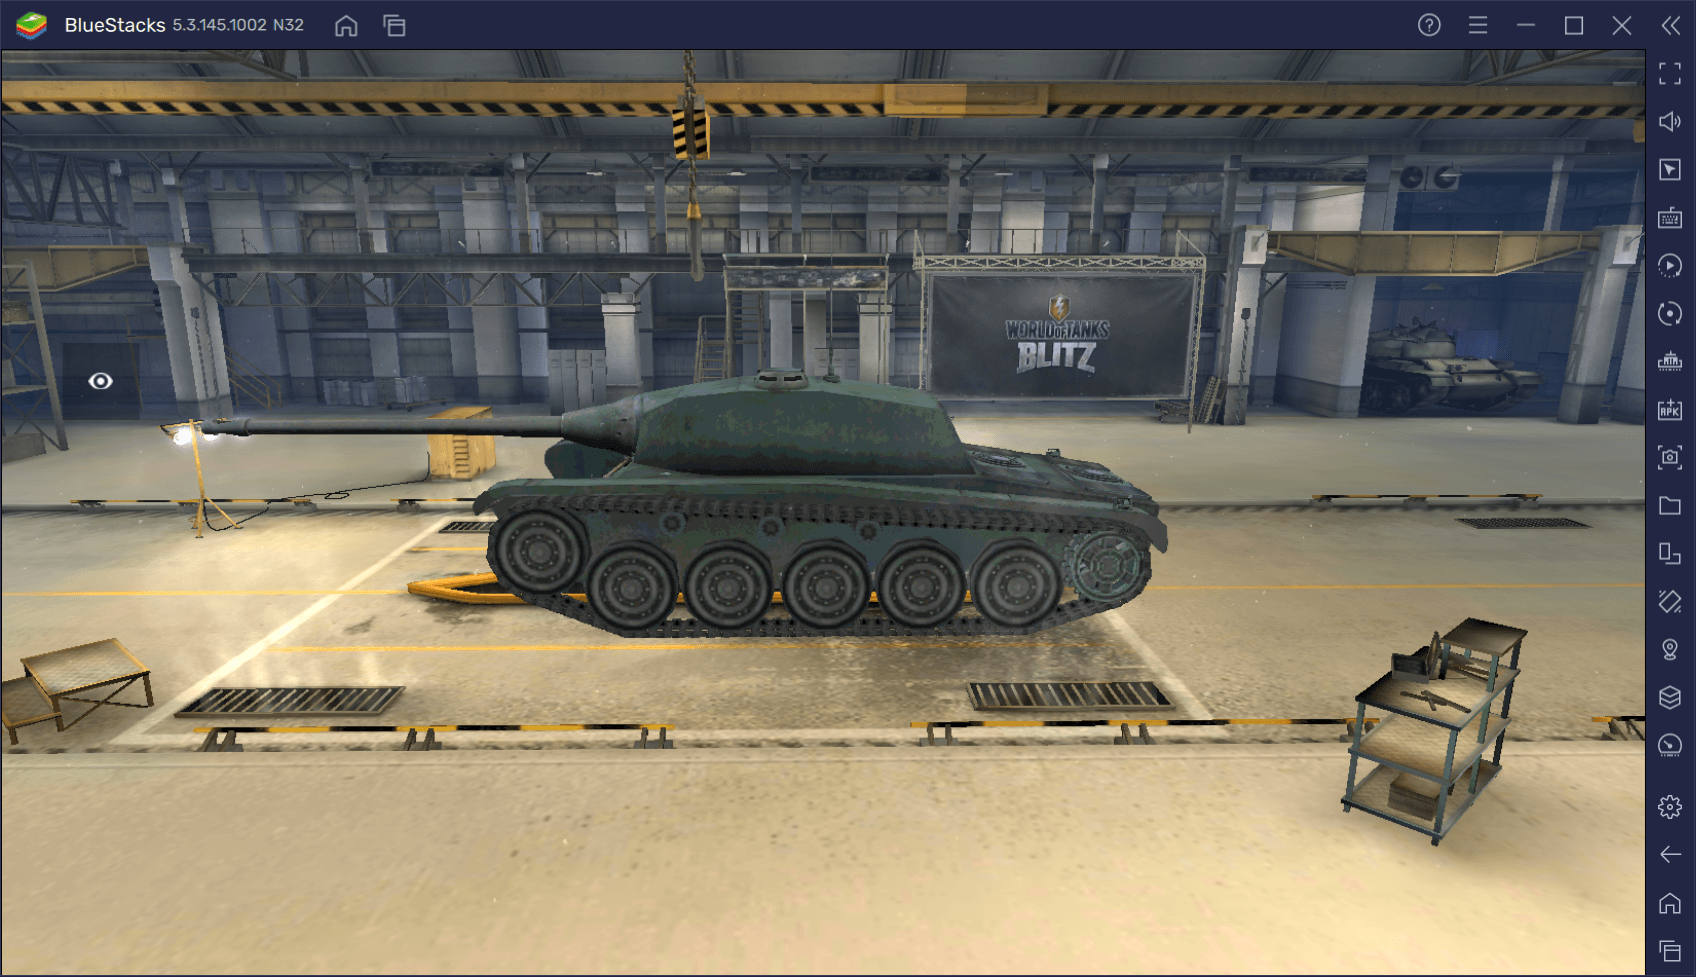 Премиумный средний танк AMX CDC в World of Tanks Blitz. Обзор параметров, достоинств и тактик игры